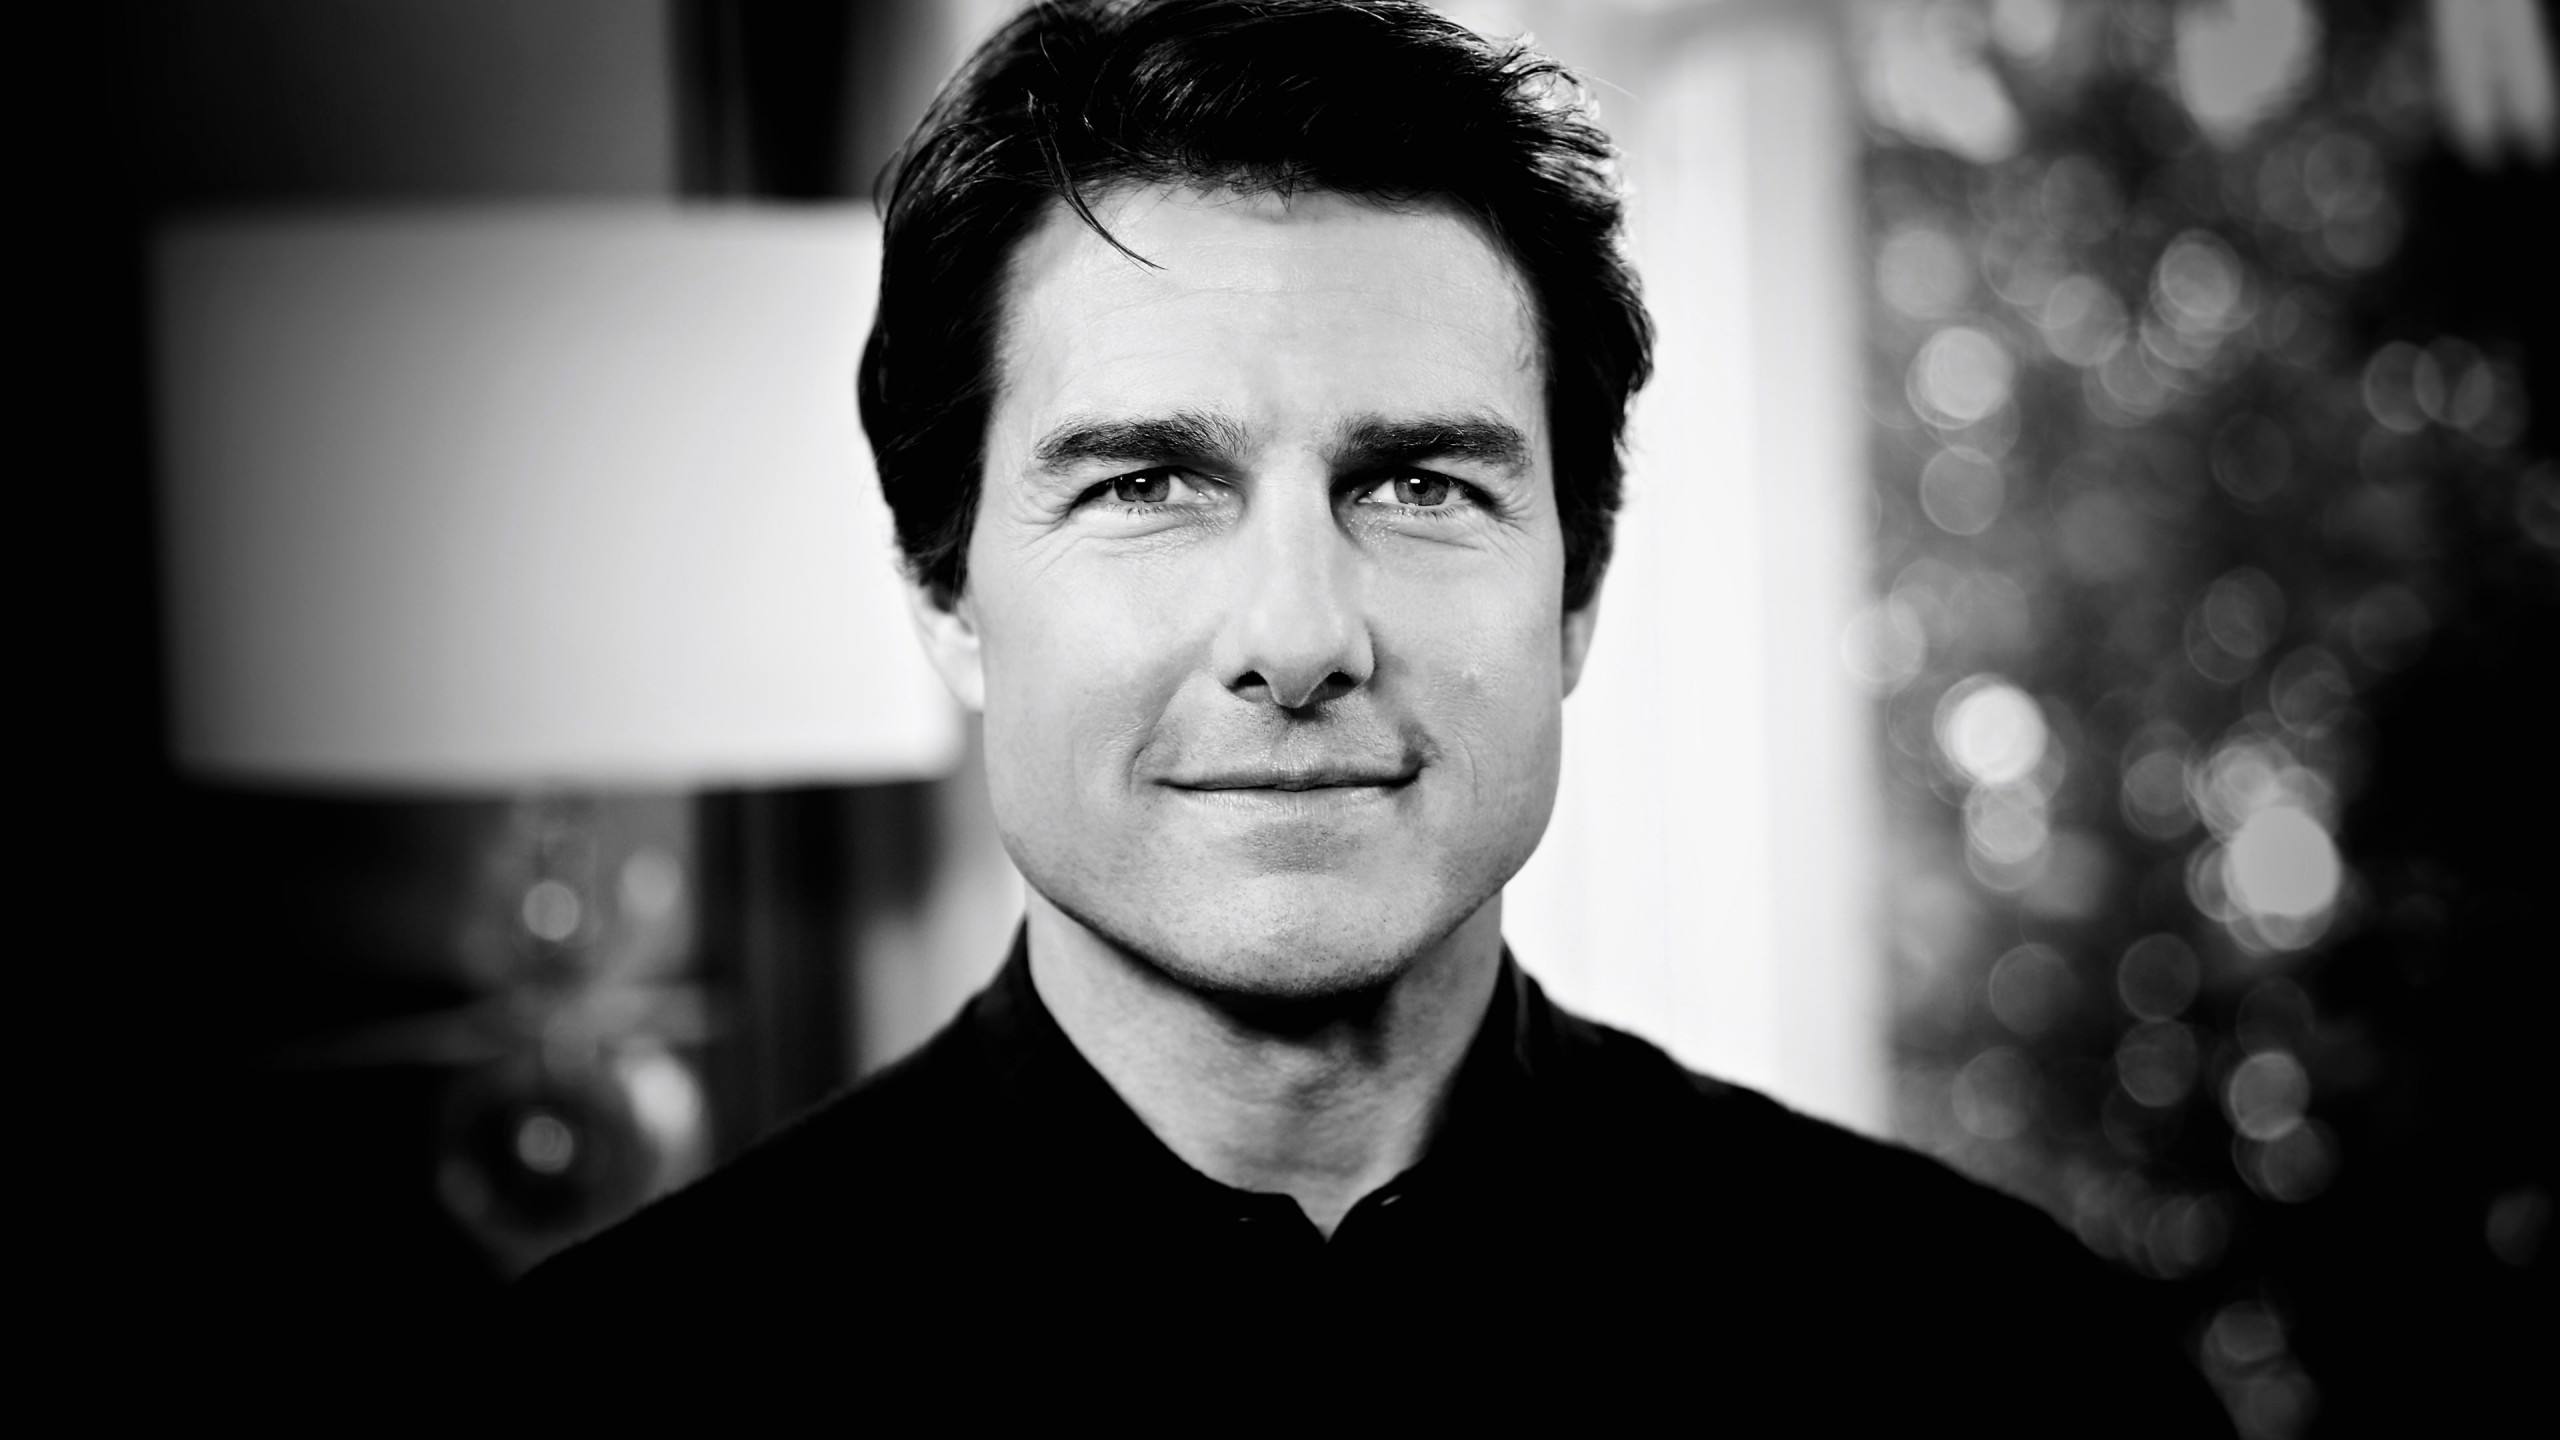 Tom Cruise Black & White Portrait Wallpaper for Desktop 2560x1440